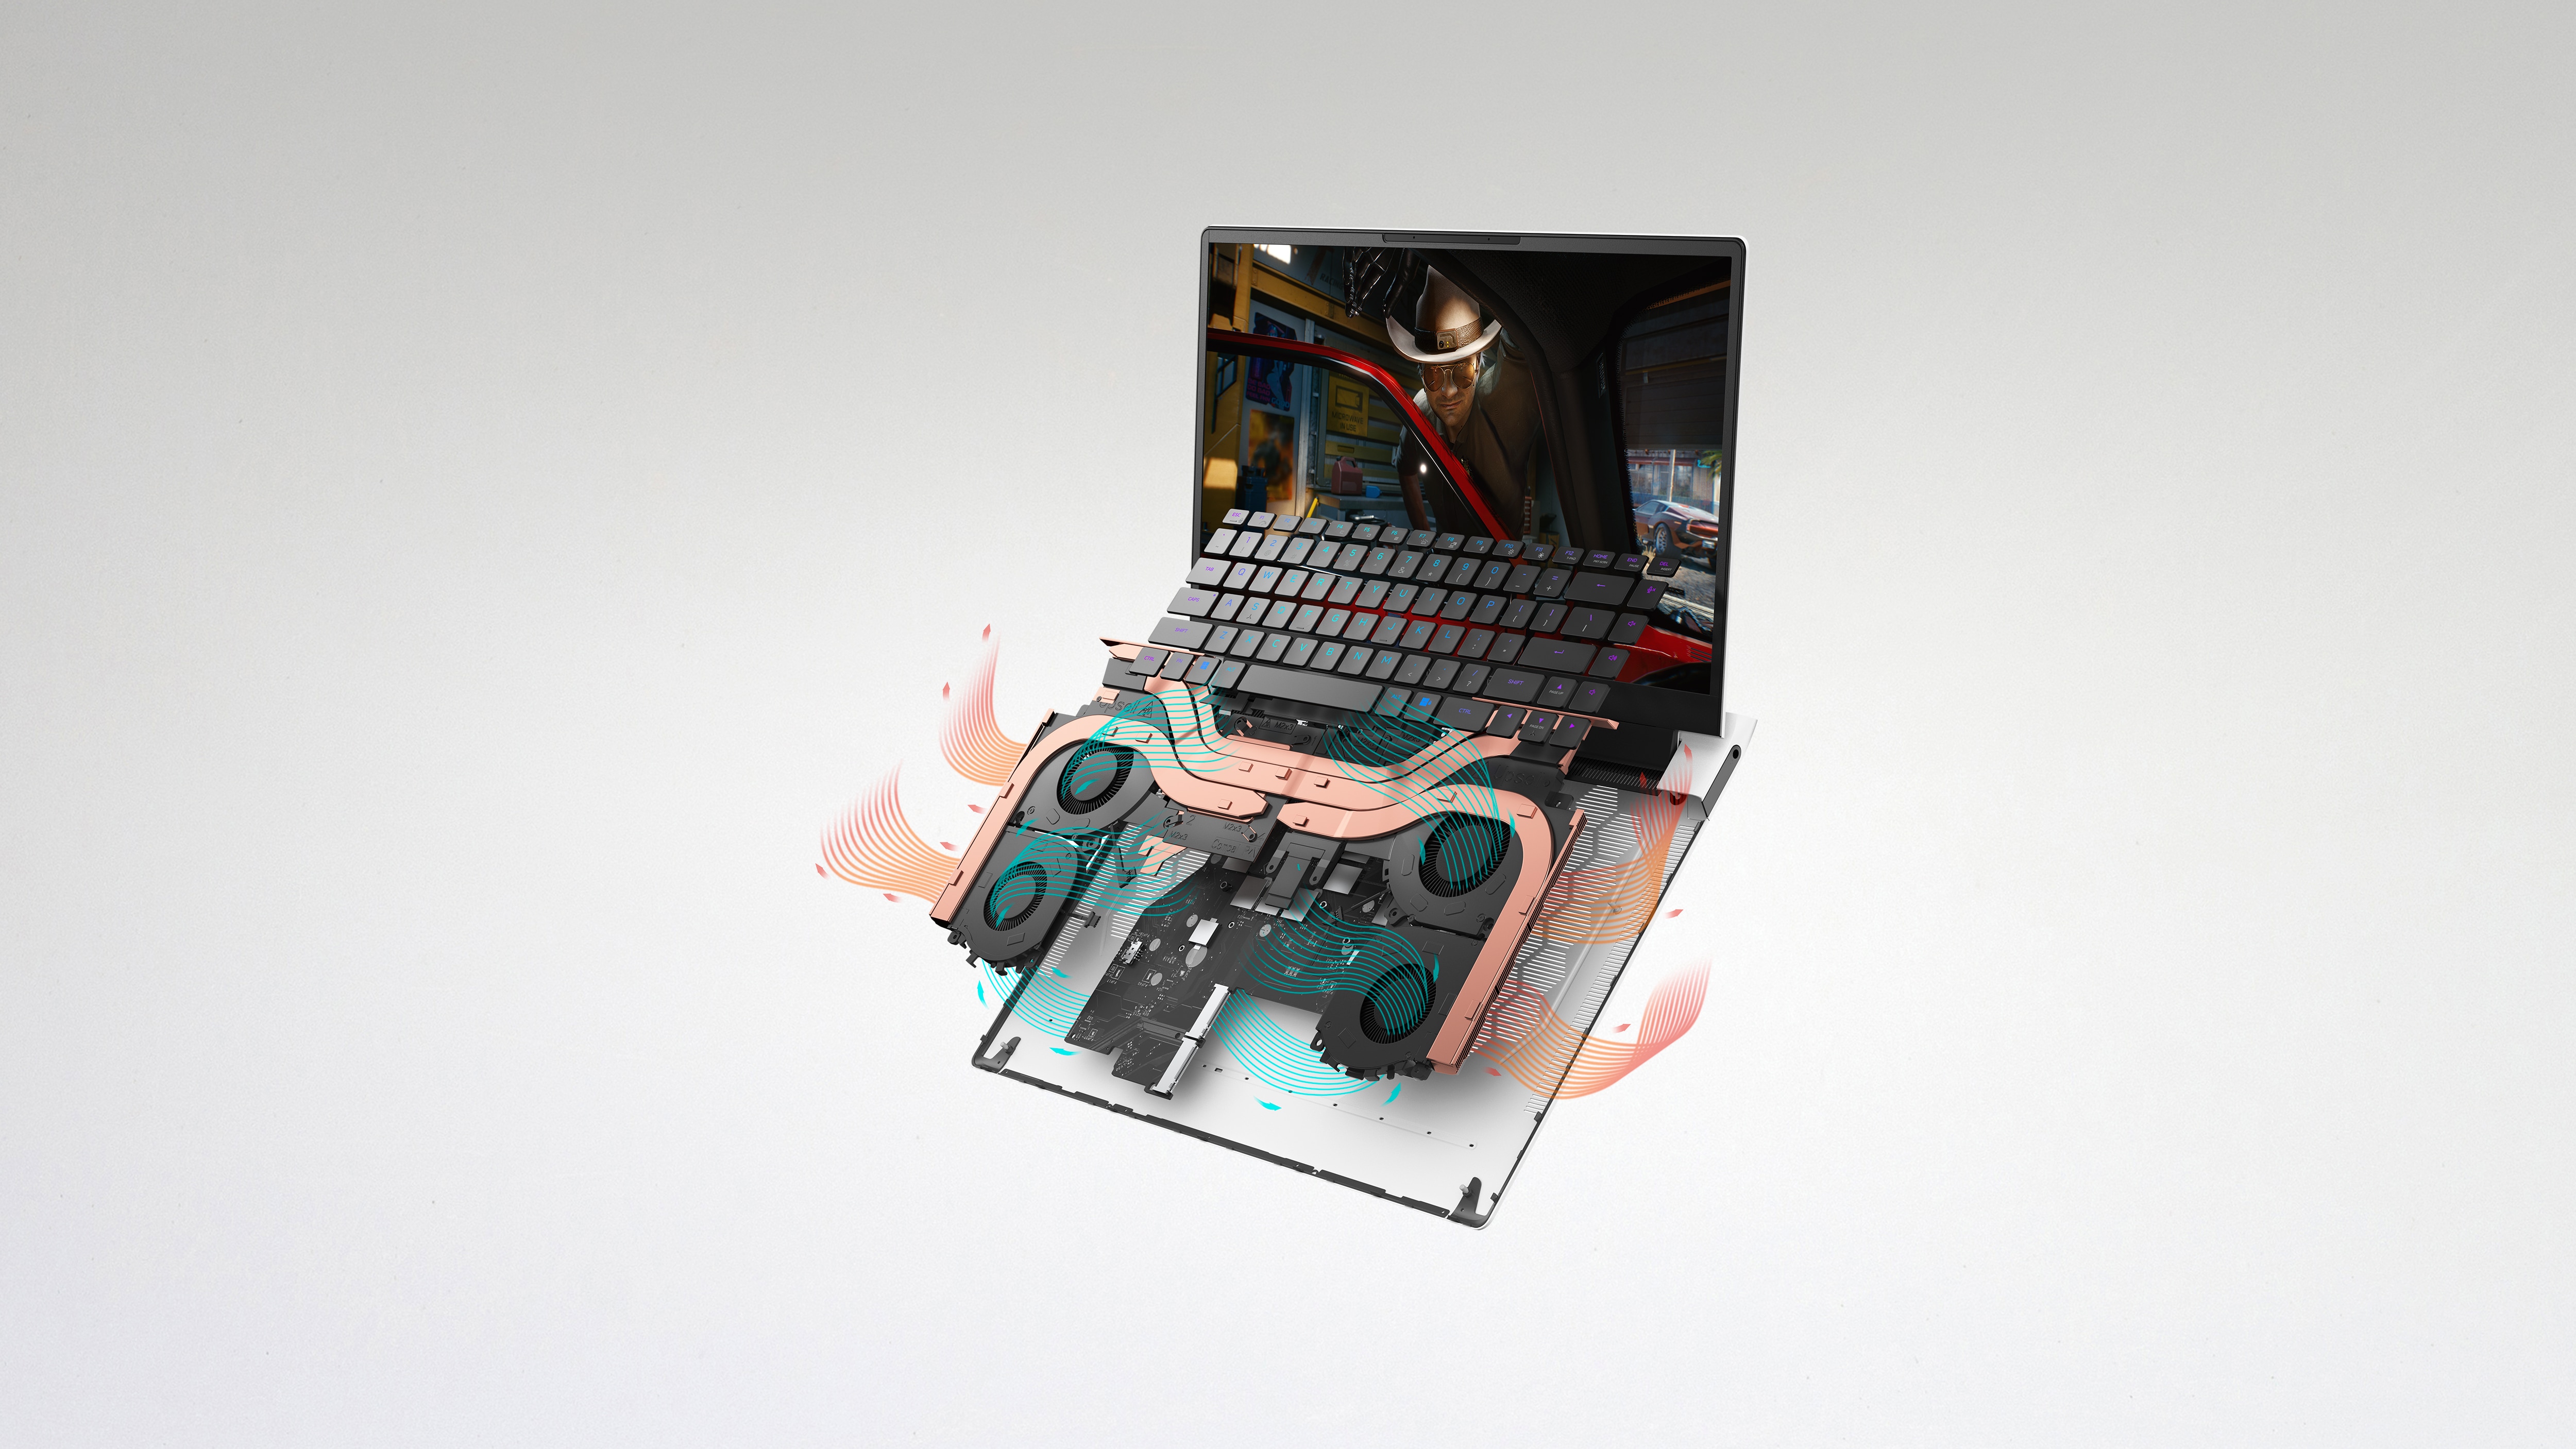 Bild des Dell Alienware x15 R2 Gaminglaptops mit ausgebauter Tastatur in Detailaufnahme, auf dem die neueste Kühltechnologie gezeigt wird.